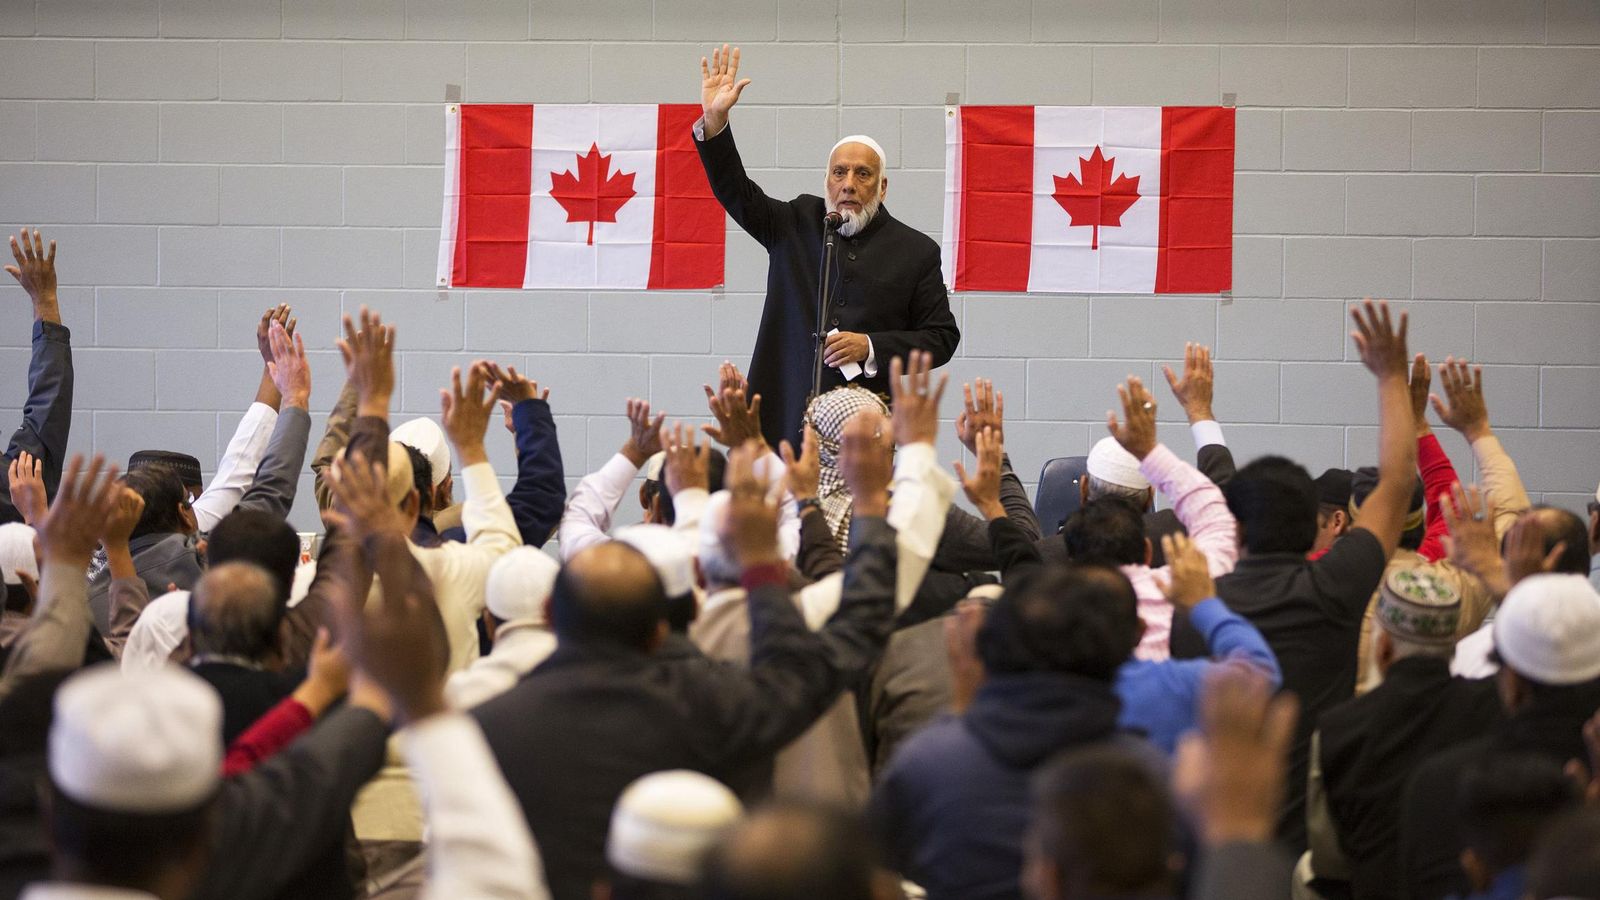 Foto: Un imán dirige una ceremonia musulmana para protestar por un atentado contra soldados canadienses, en Alberta, octubre de 2014 (Reuters)